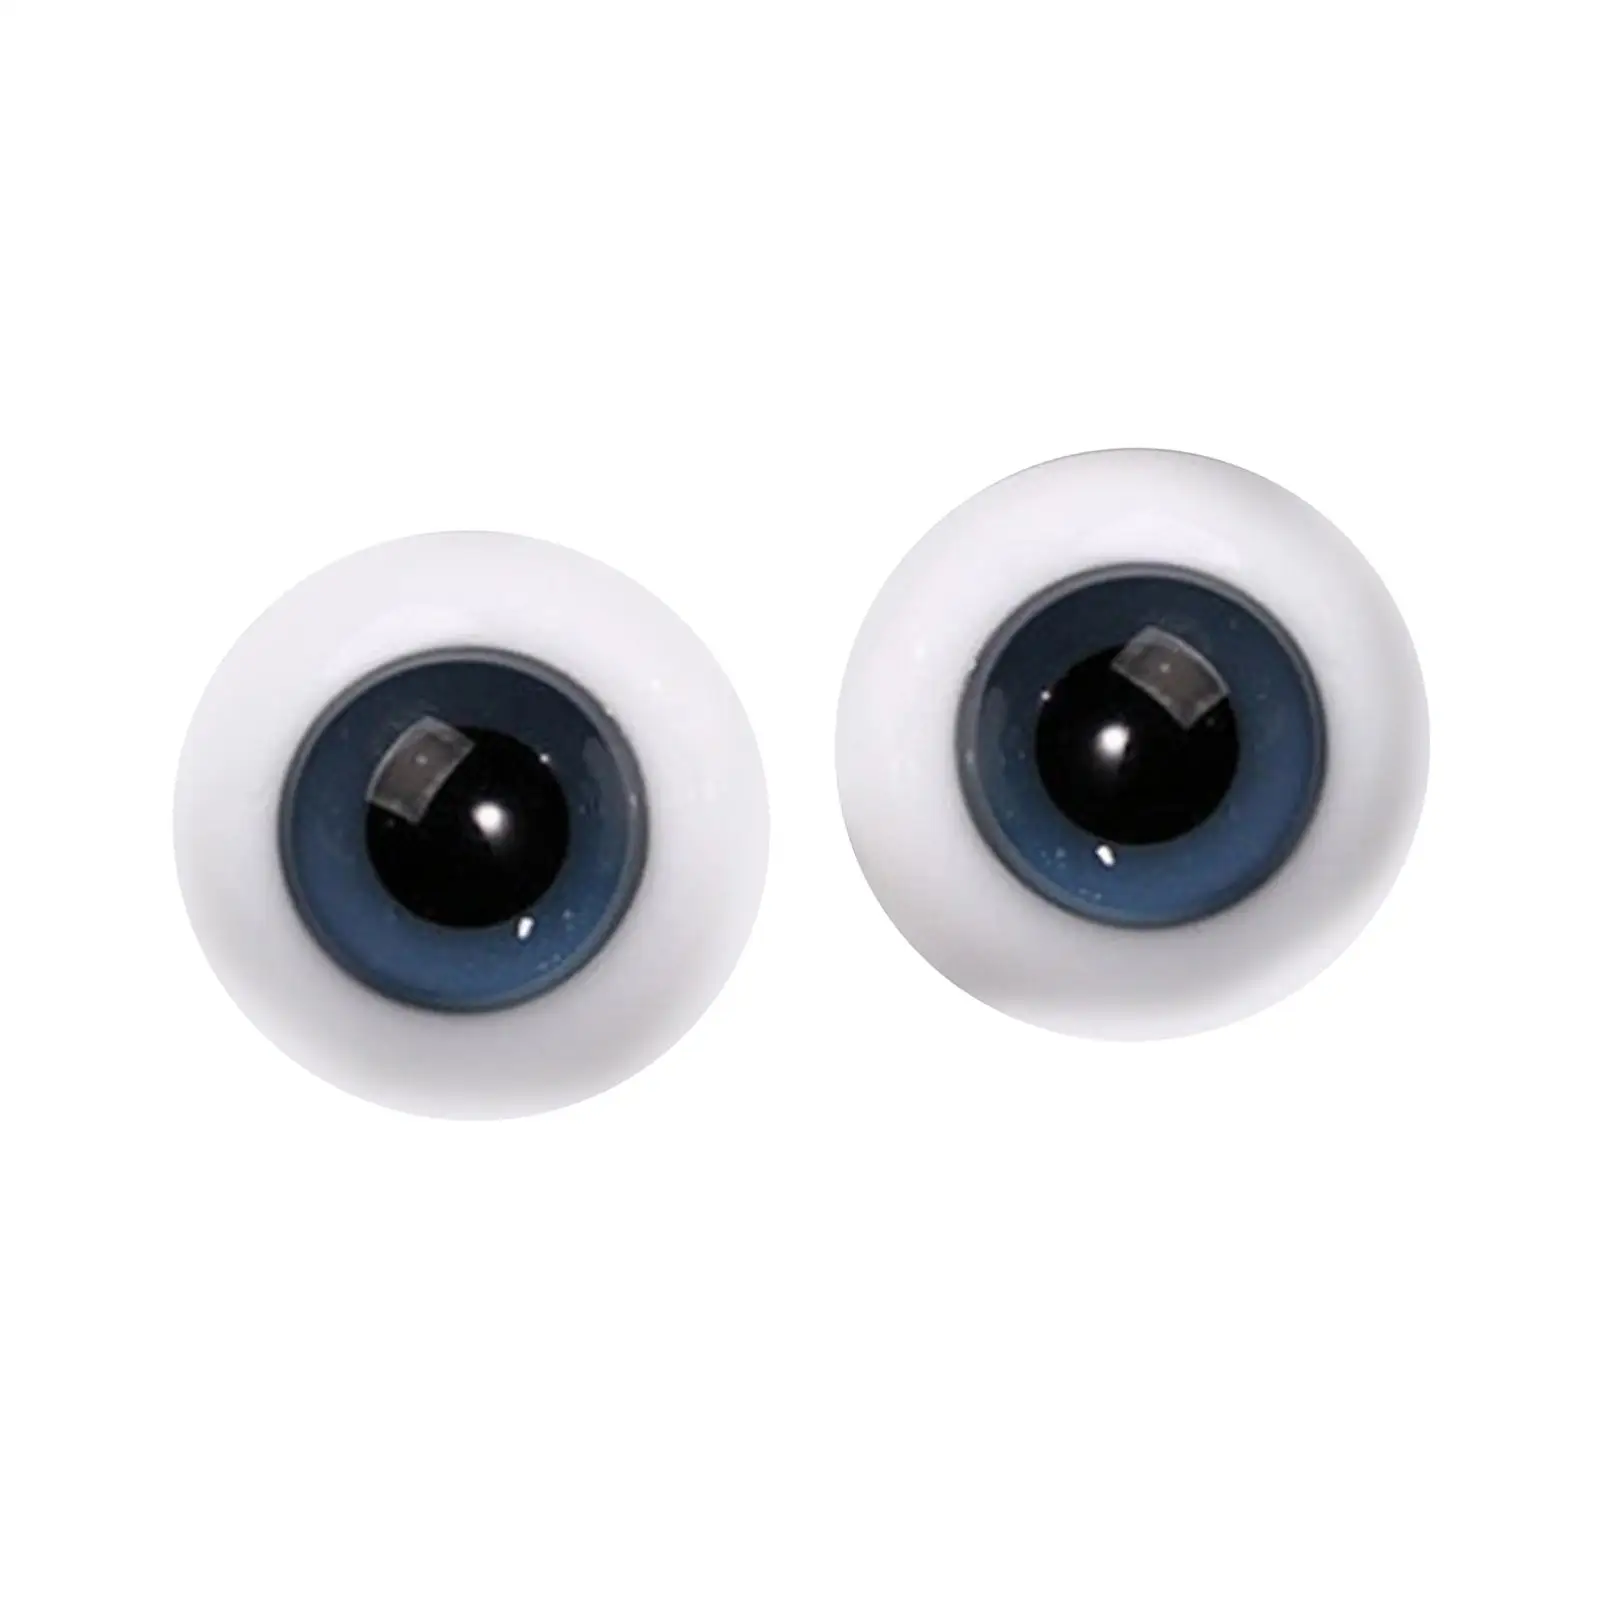 2шт Большие кукольные глаза, шевелящиеся глаза (6 мм), подвижные художественные поделки, глазное яблоко для изготовления кукол, скульптура, реквизит для Хэллоуина Изображение 5